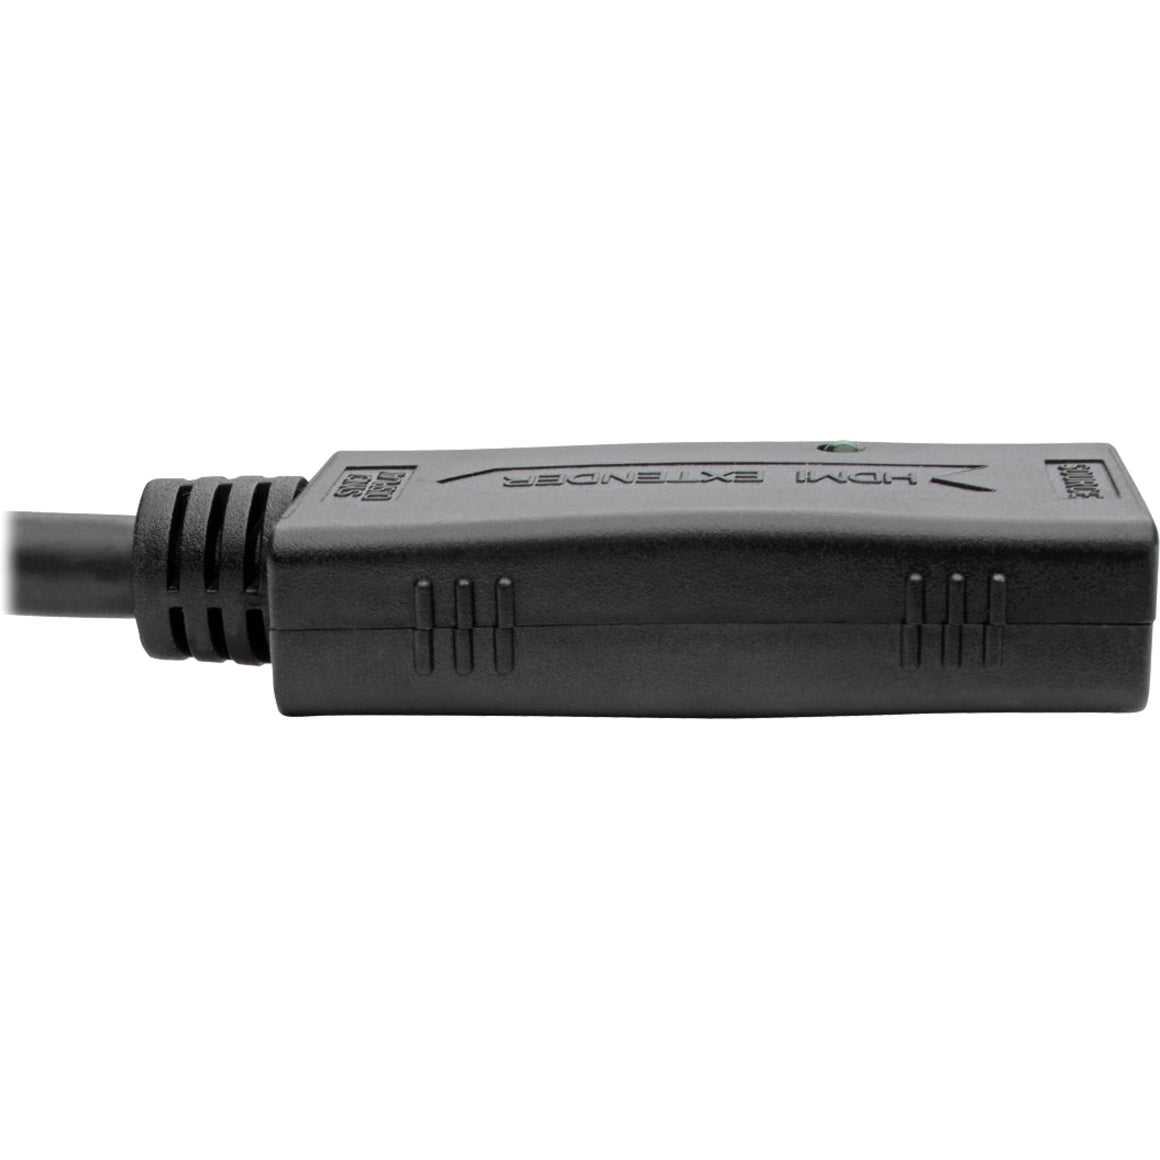 Tripp Lite B123-001 HDMI Attivo Cavo di prolunga 1ft Conduttore in rame Conforme TAA Origine Taiwan.